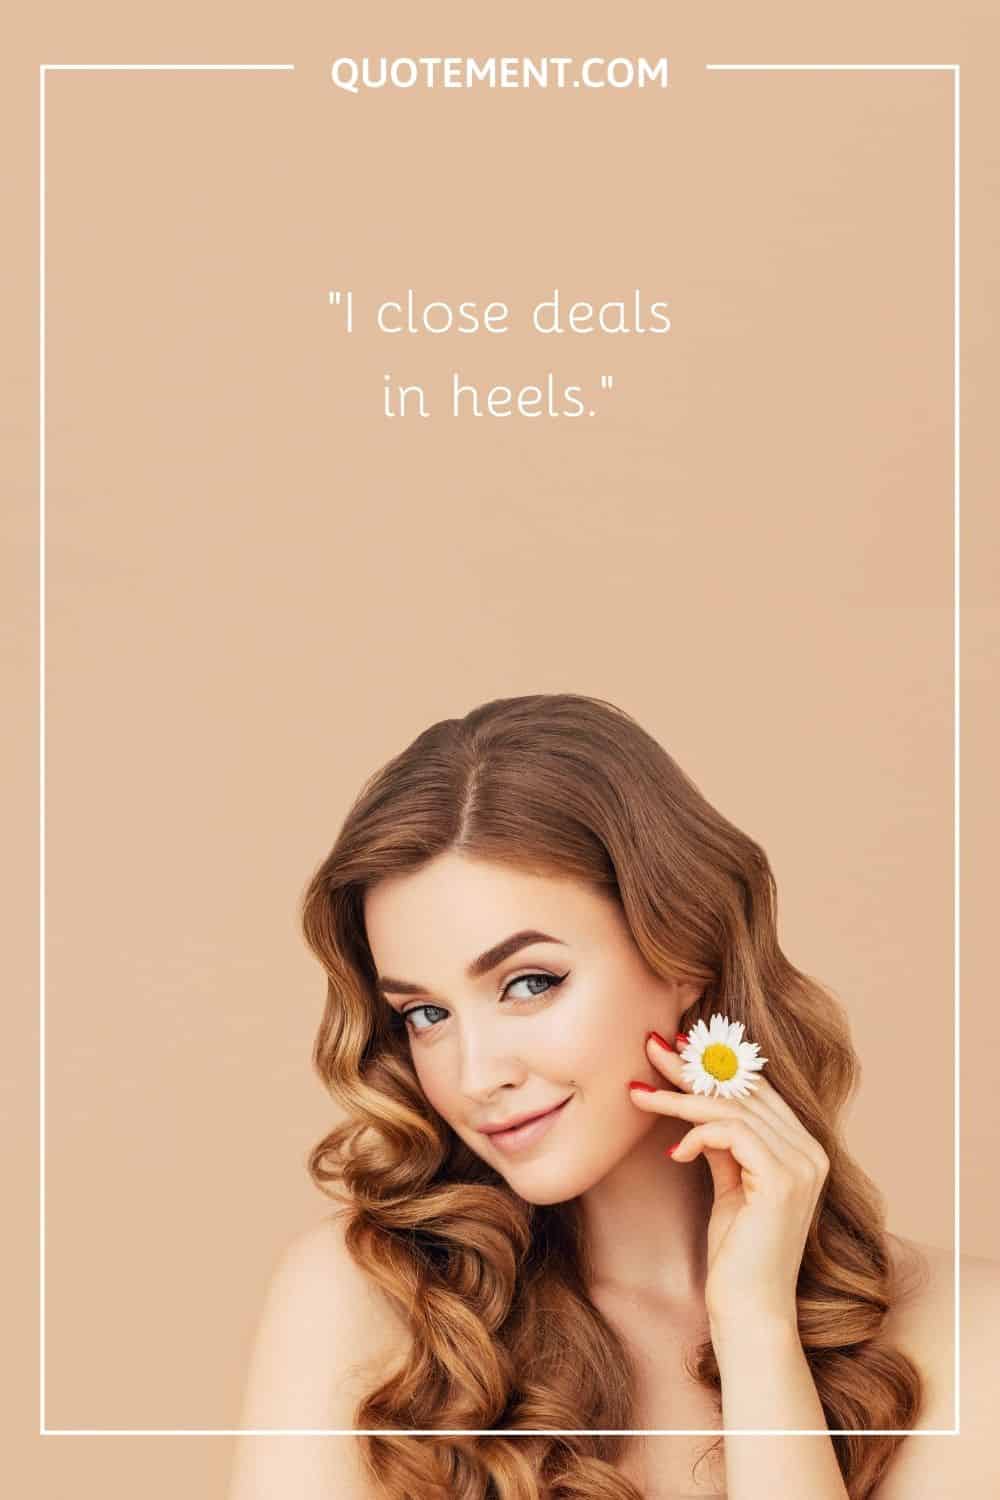 I close deals in heels.